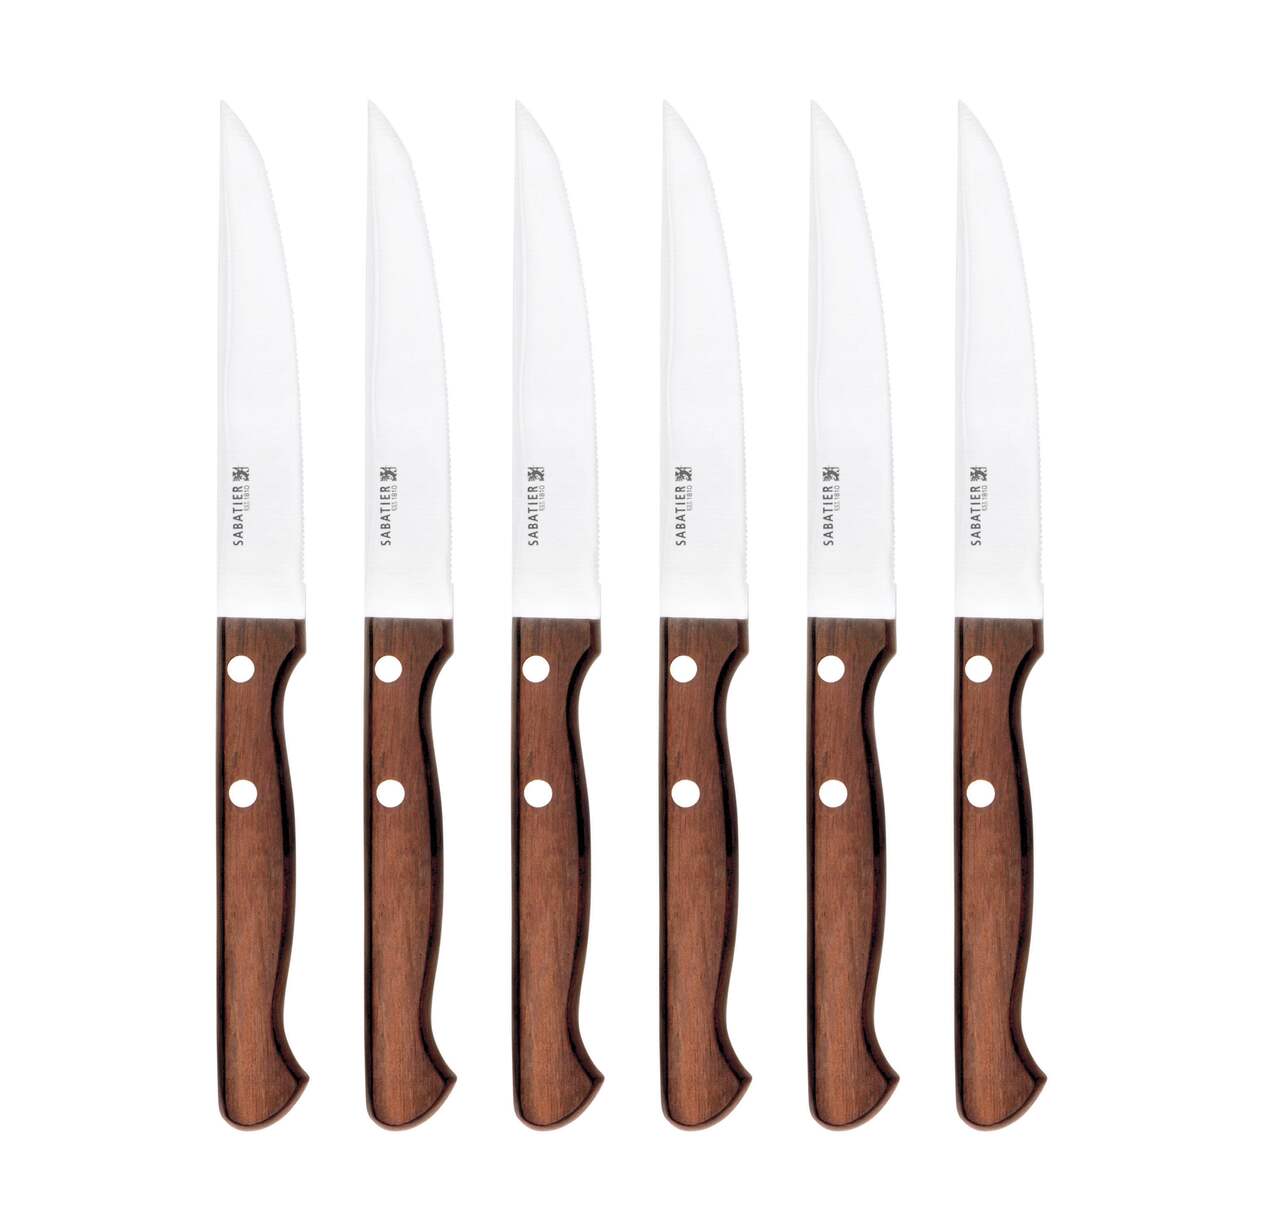 Couteaux à steak Sabatier - couteau de cuisine